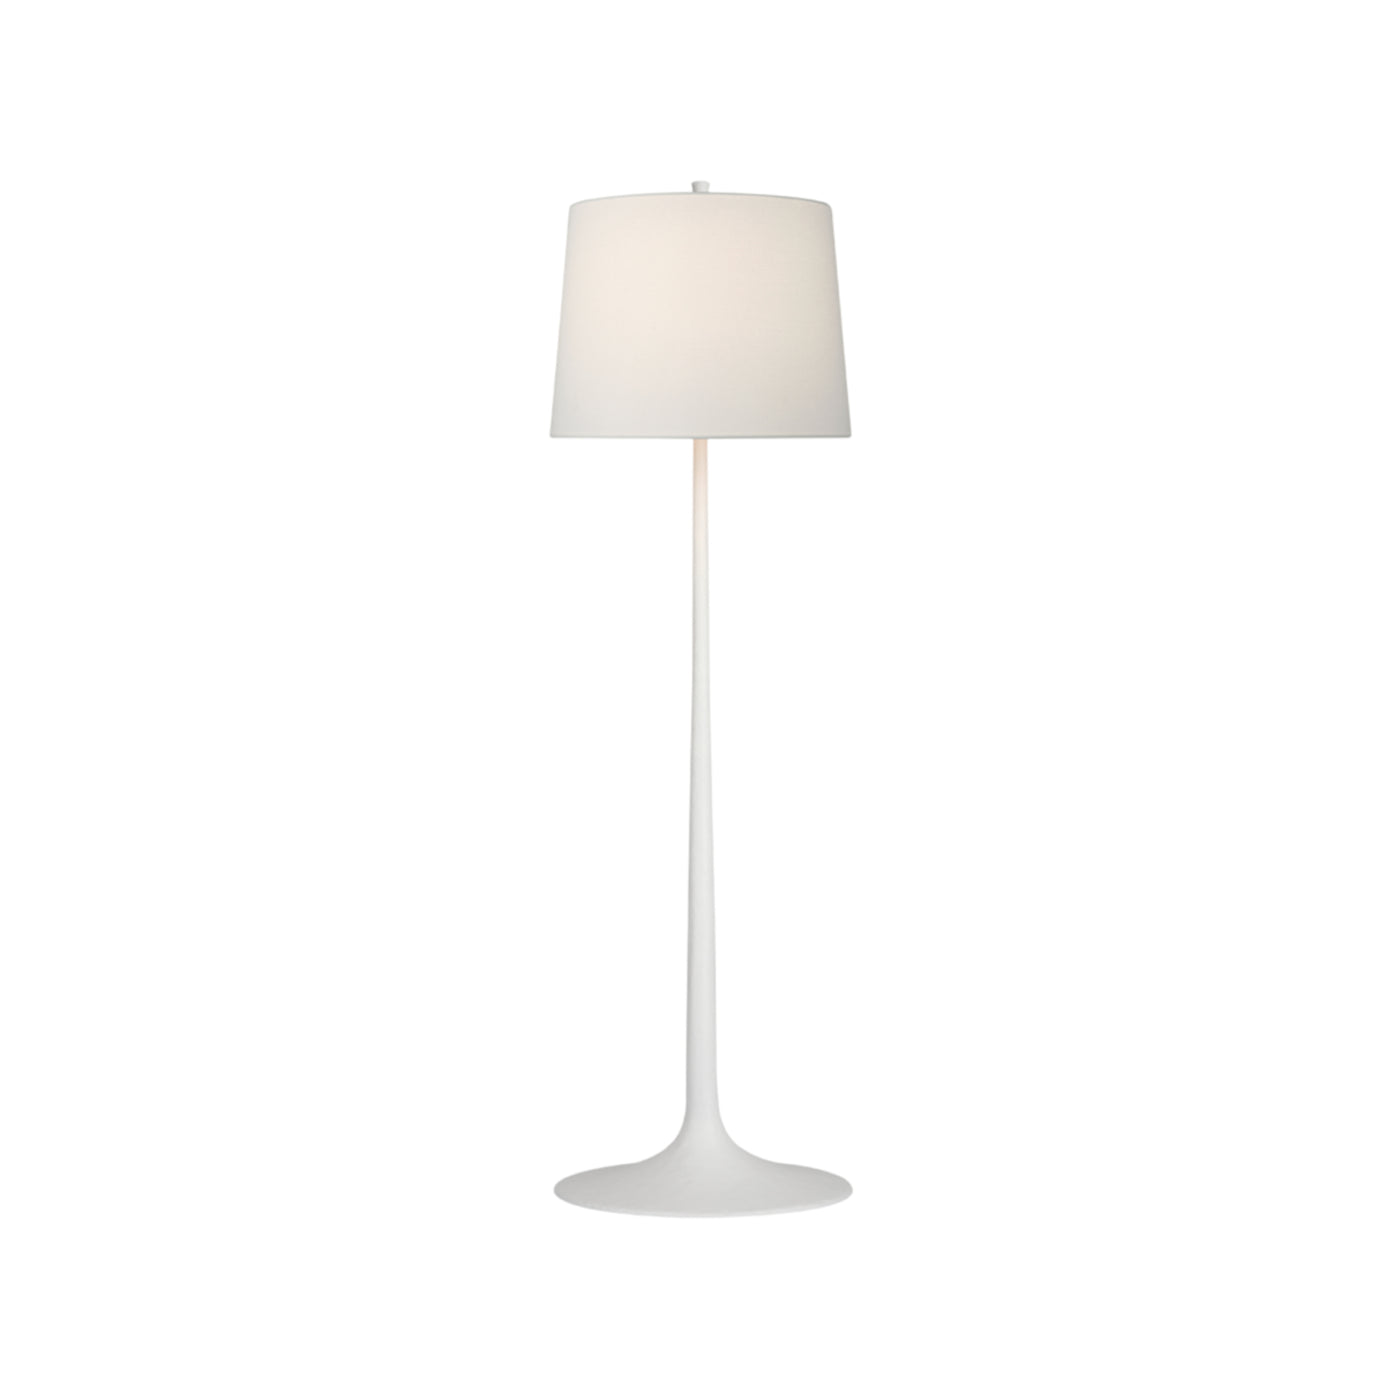 Large White Floor Lamp